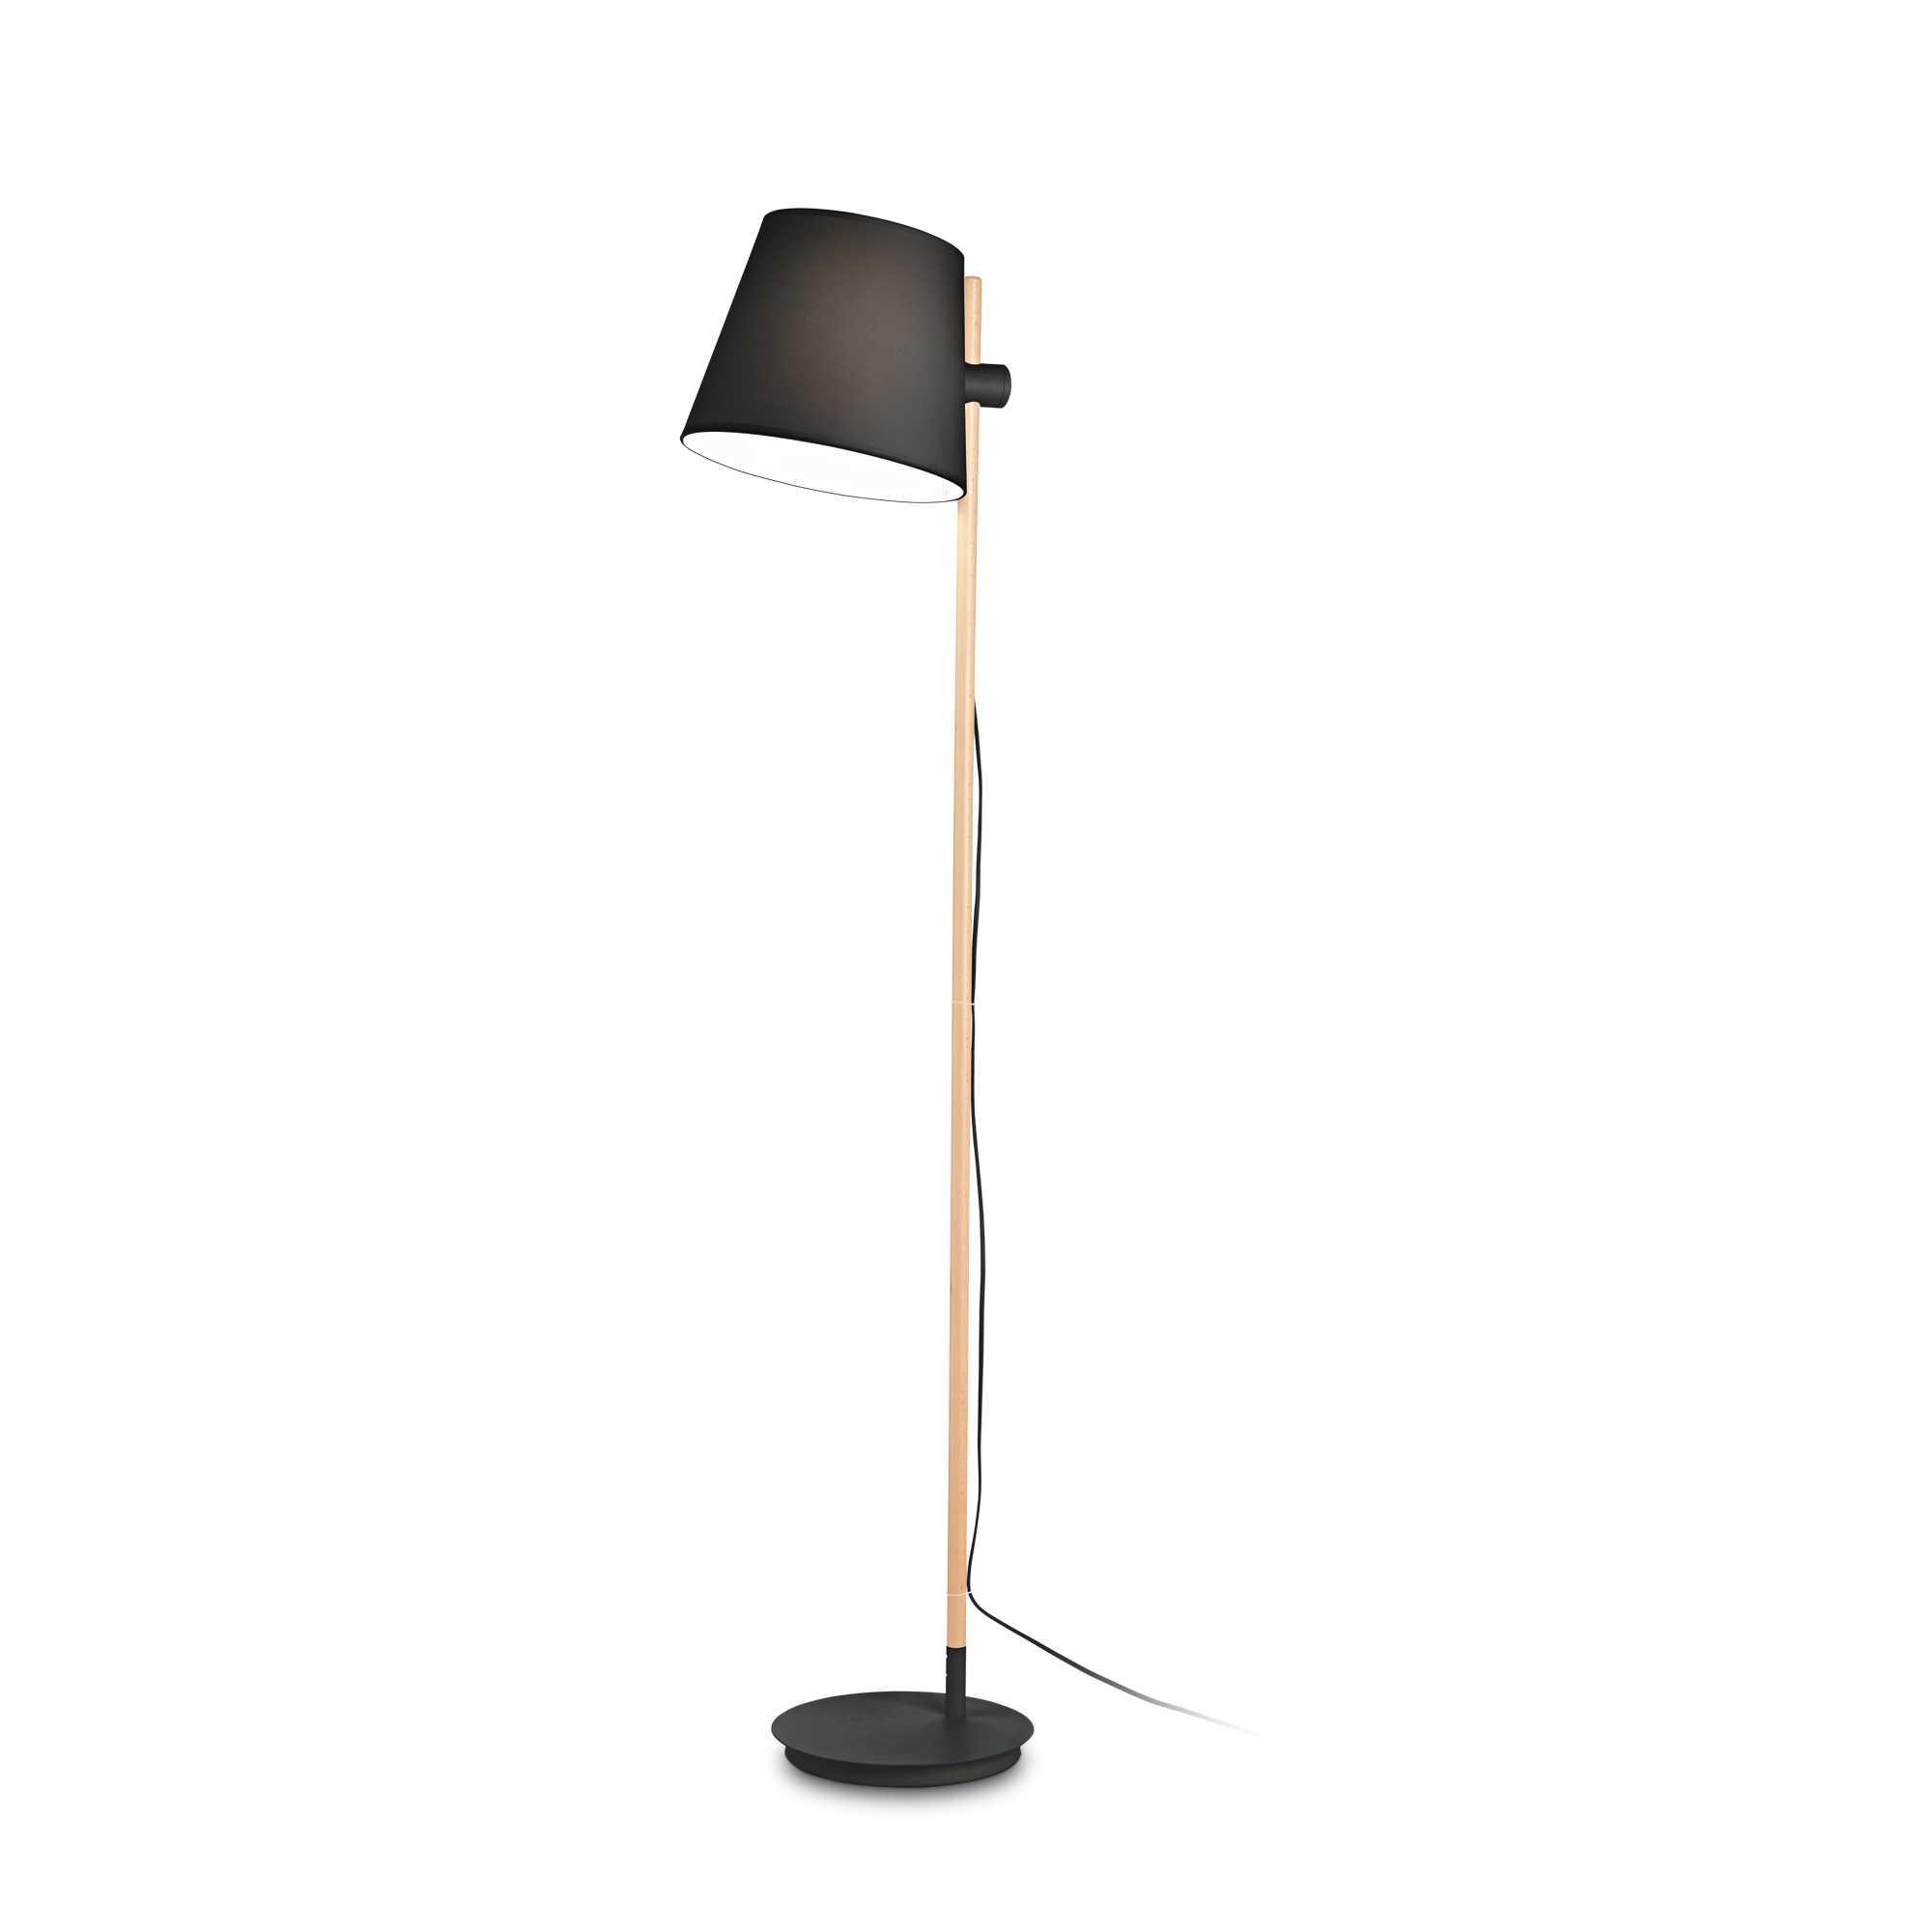 AD hotelska oprema Podna lampa Axel pt1- Crne boje slika proizvoda